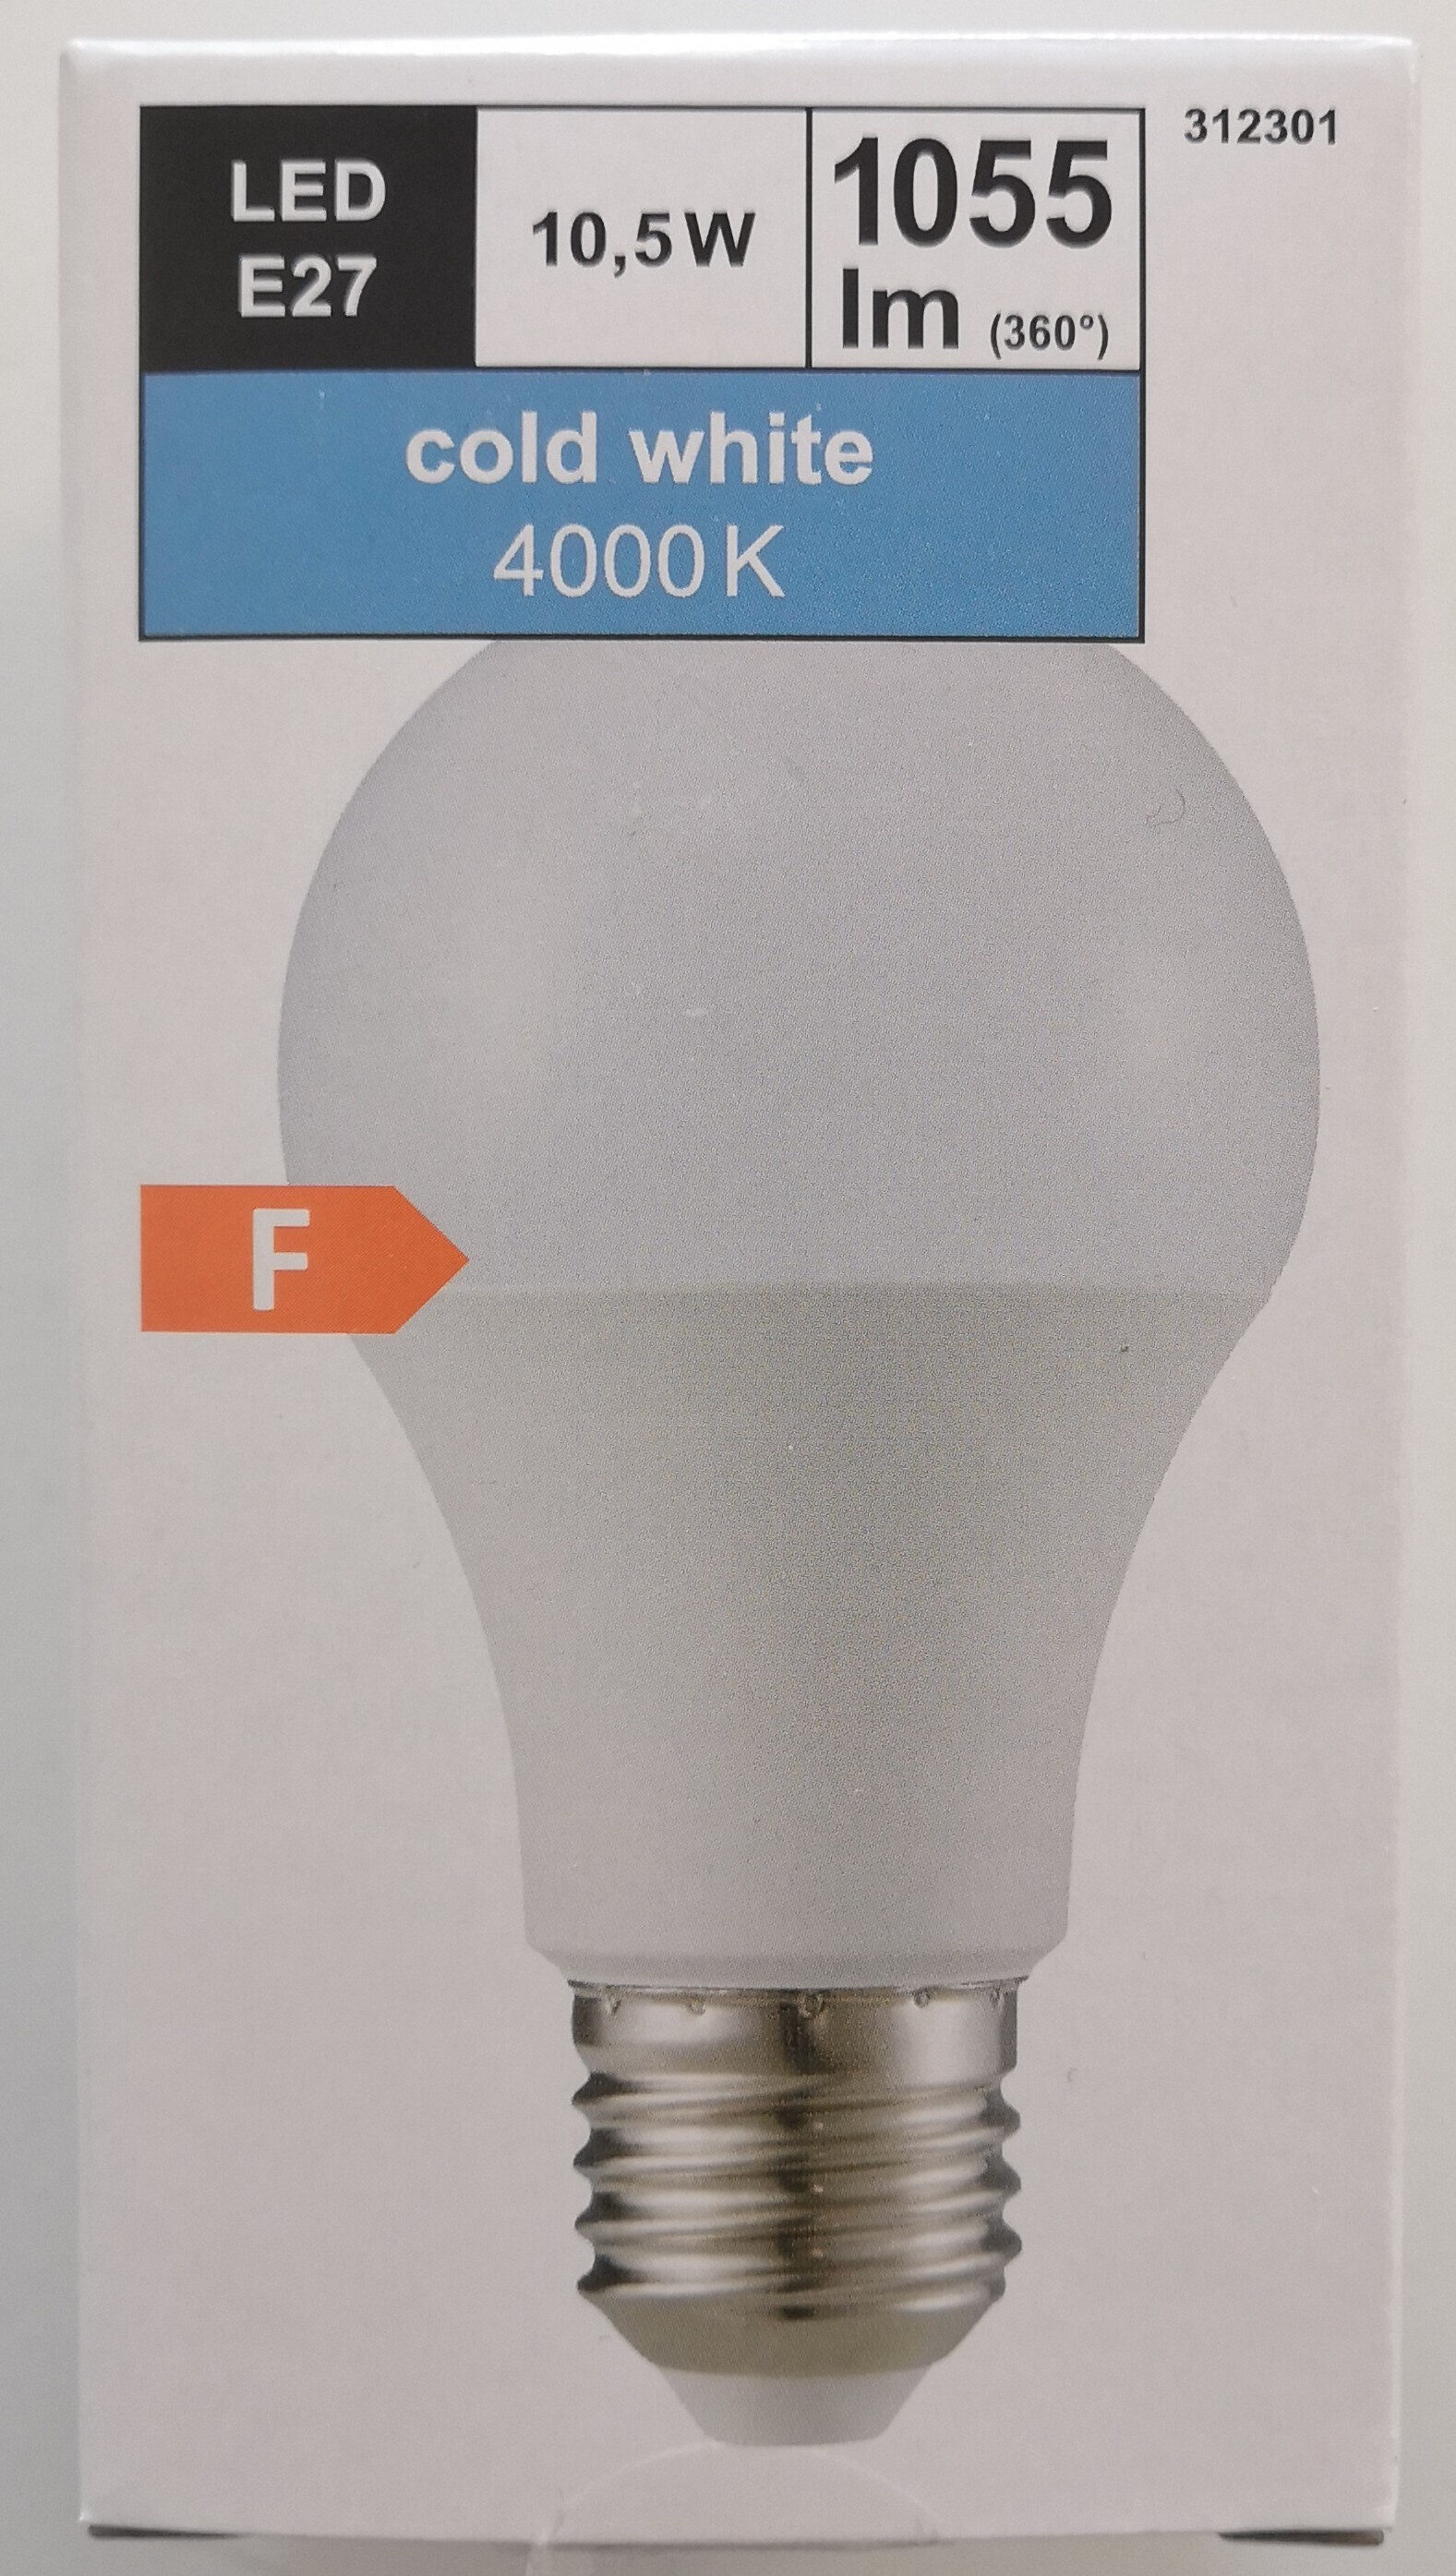 LED Leuchtmittel E27 10,5 W 1055 lm 4000 K - Product - de